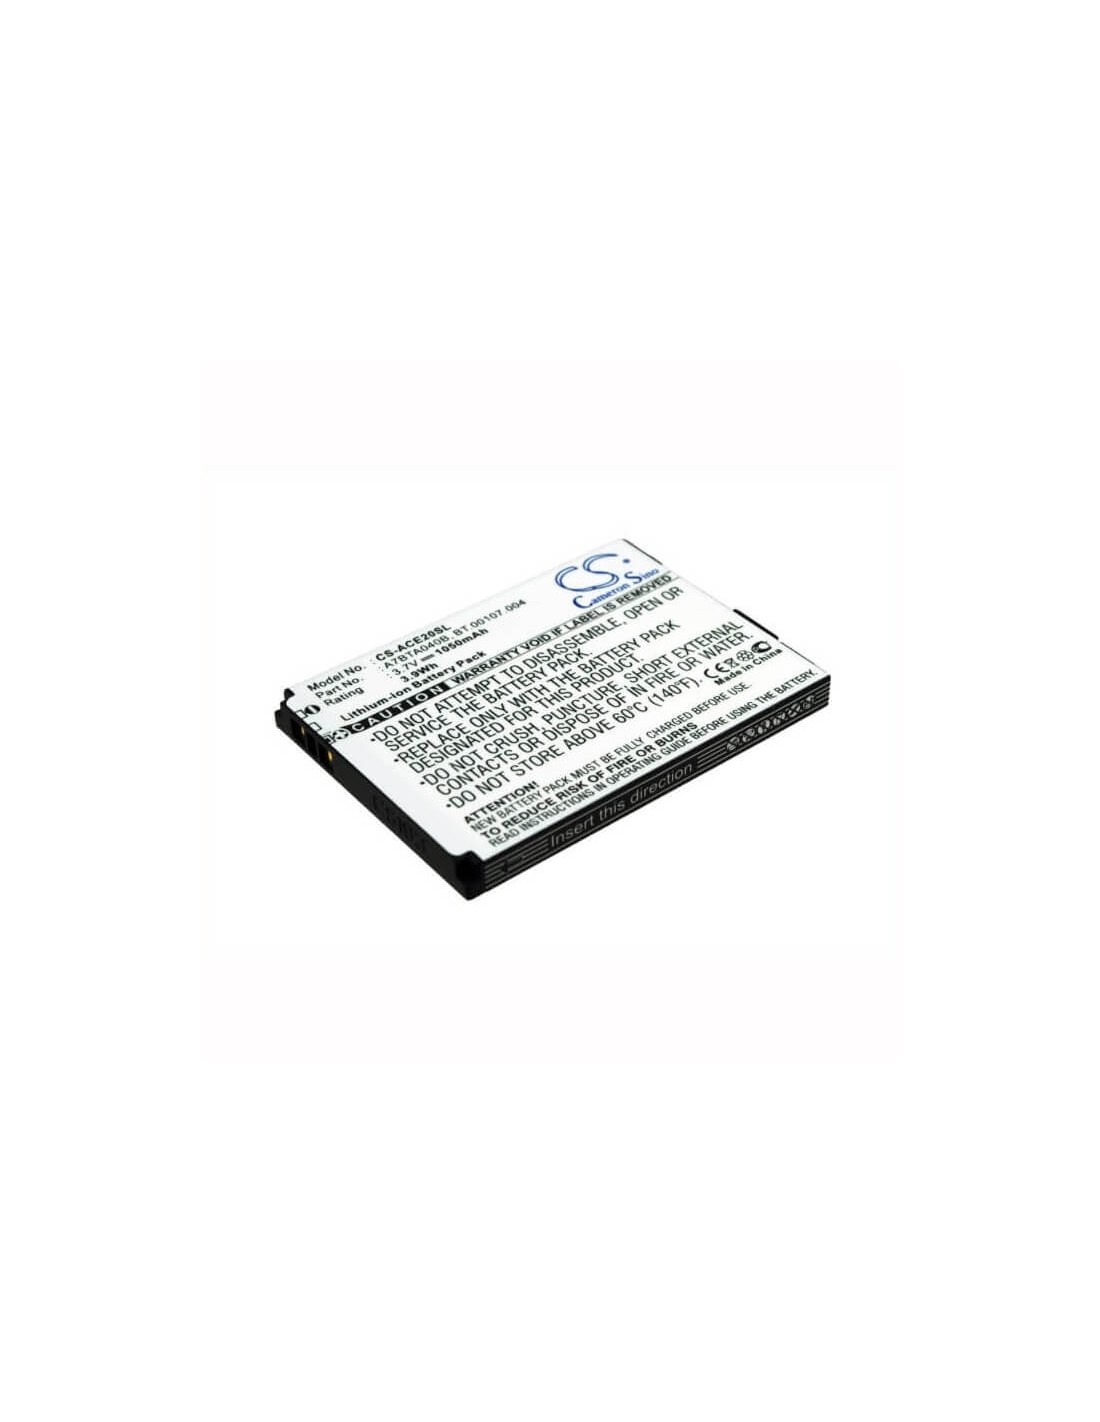 Battery for Acer L1, beTouch E200 3.7V, 1050mAh - 3.89Wh